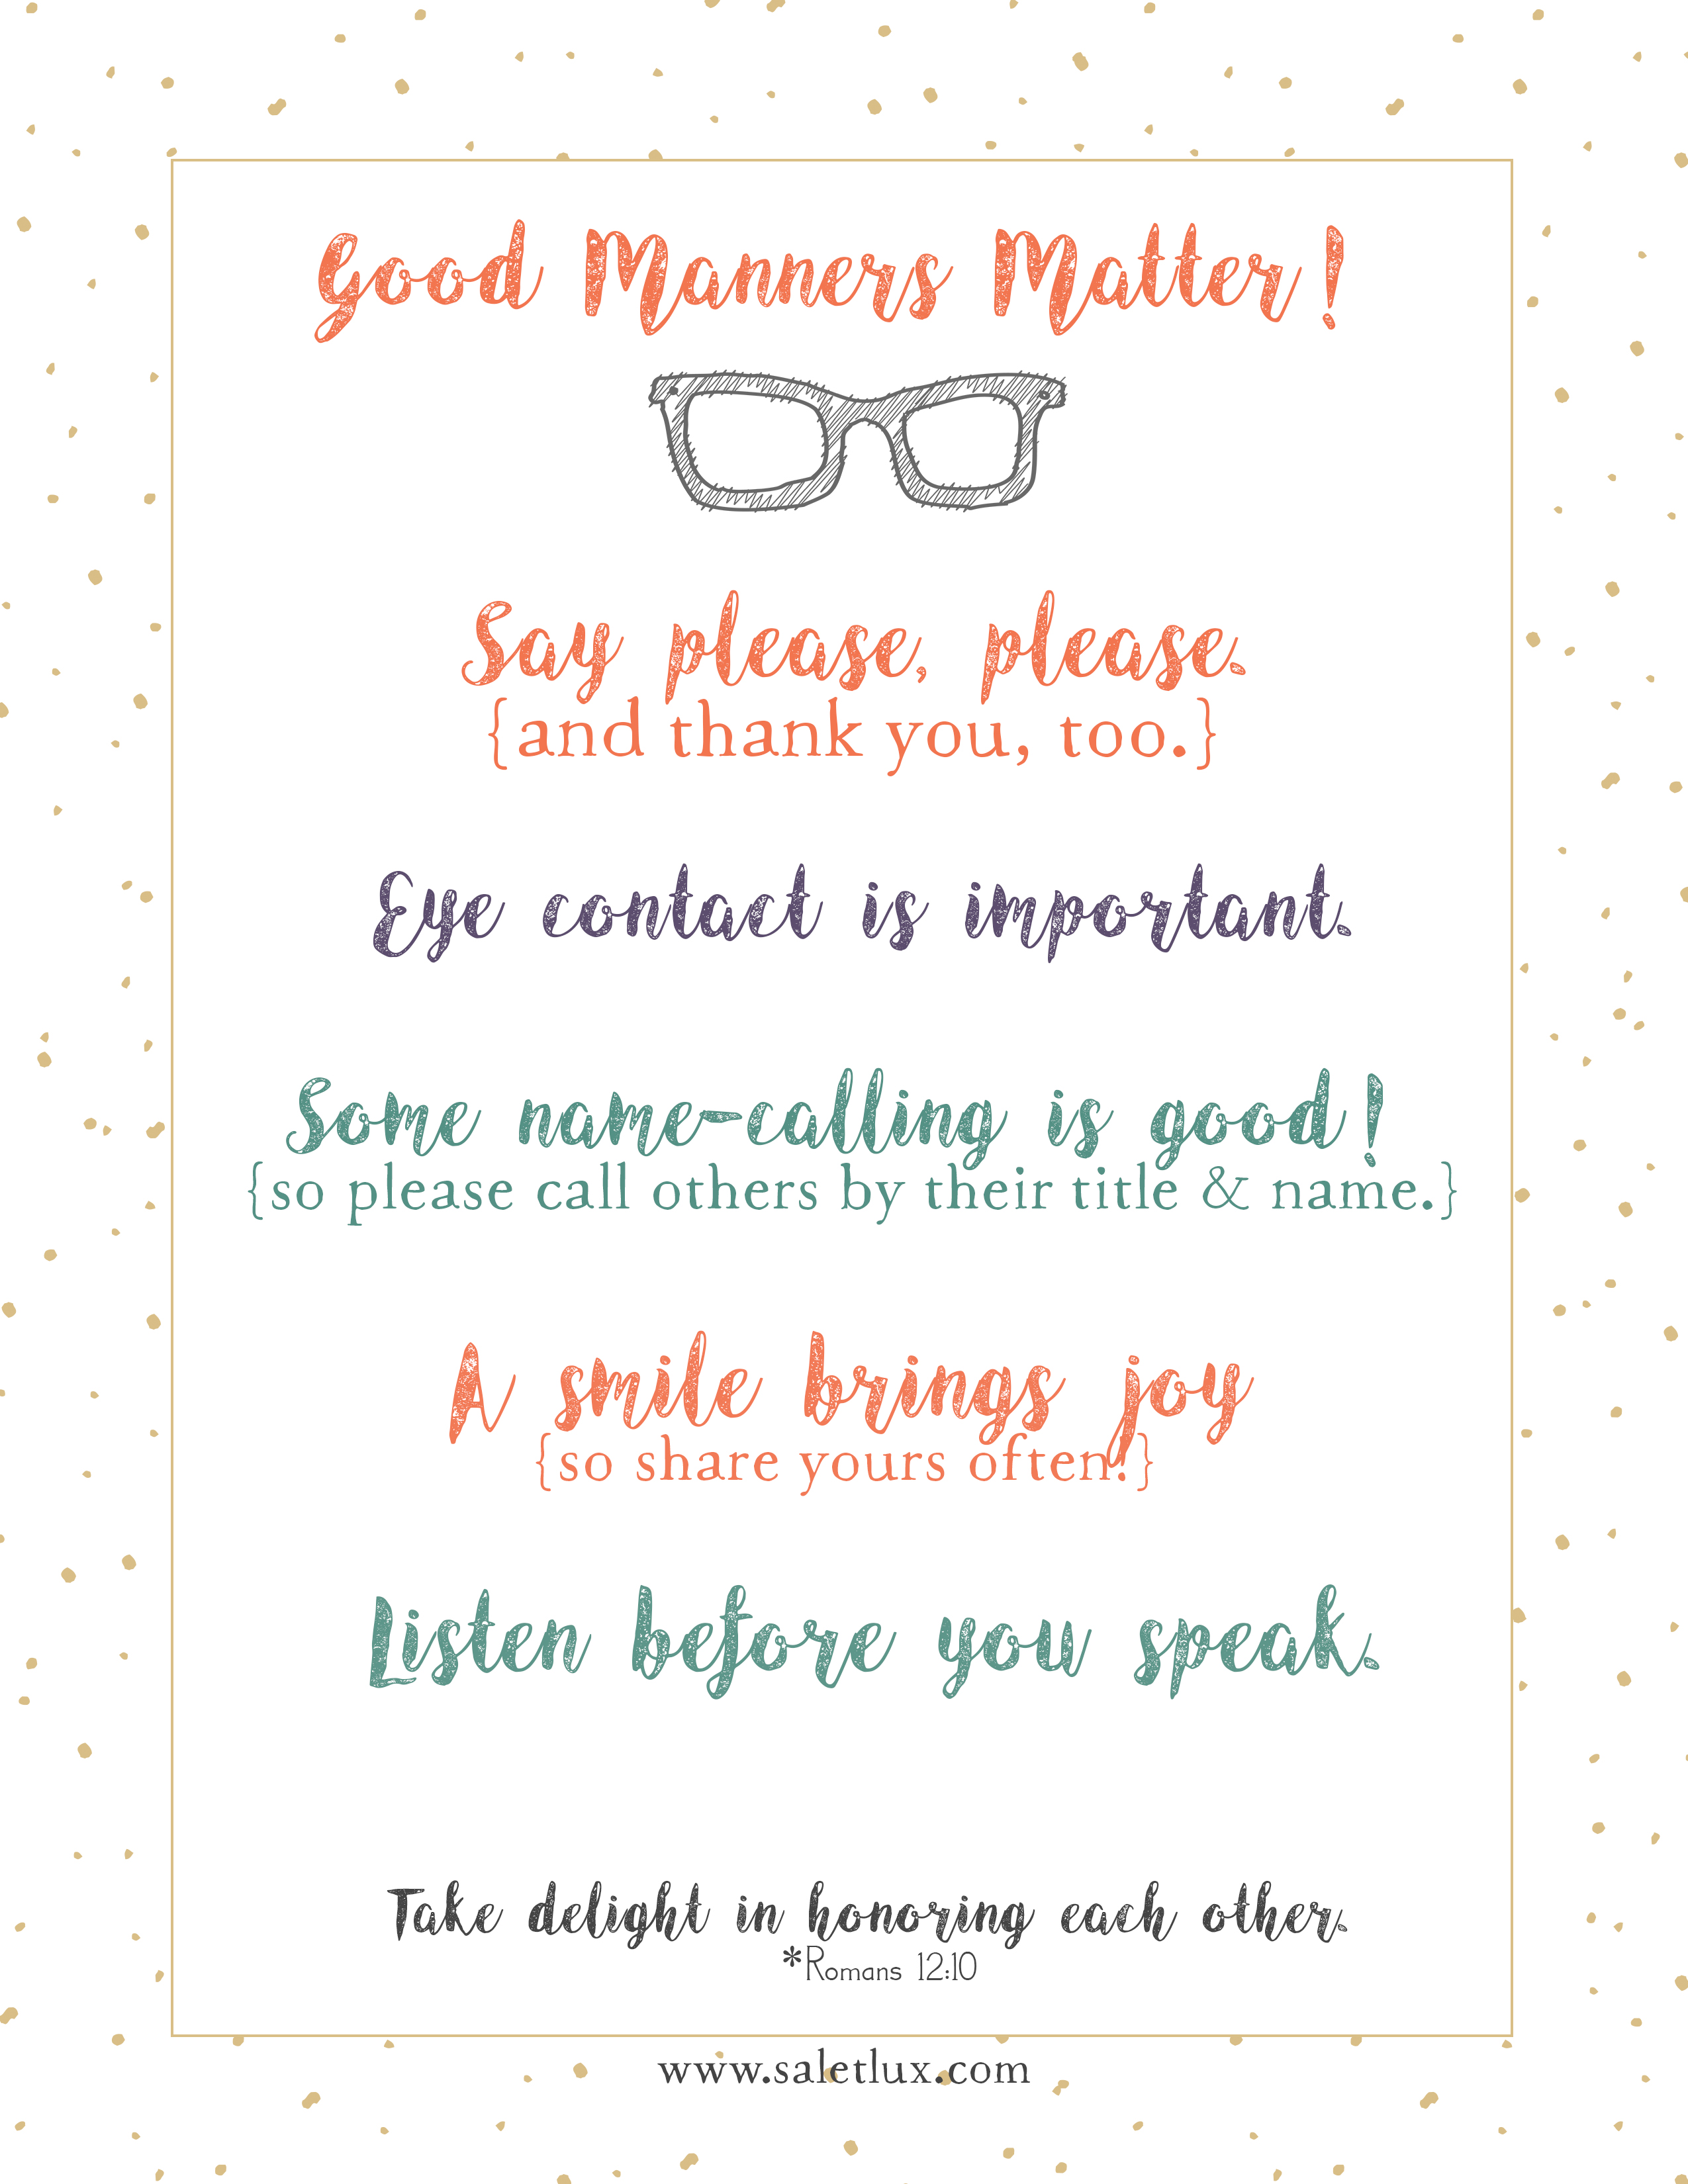 Good-Manners-Matter-sal-et-lux